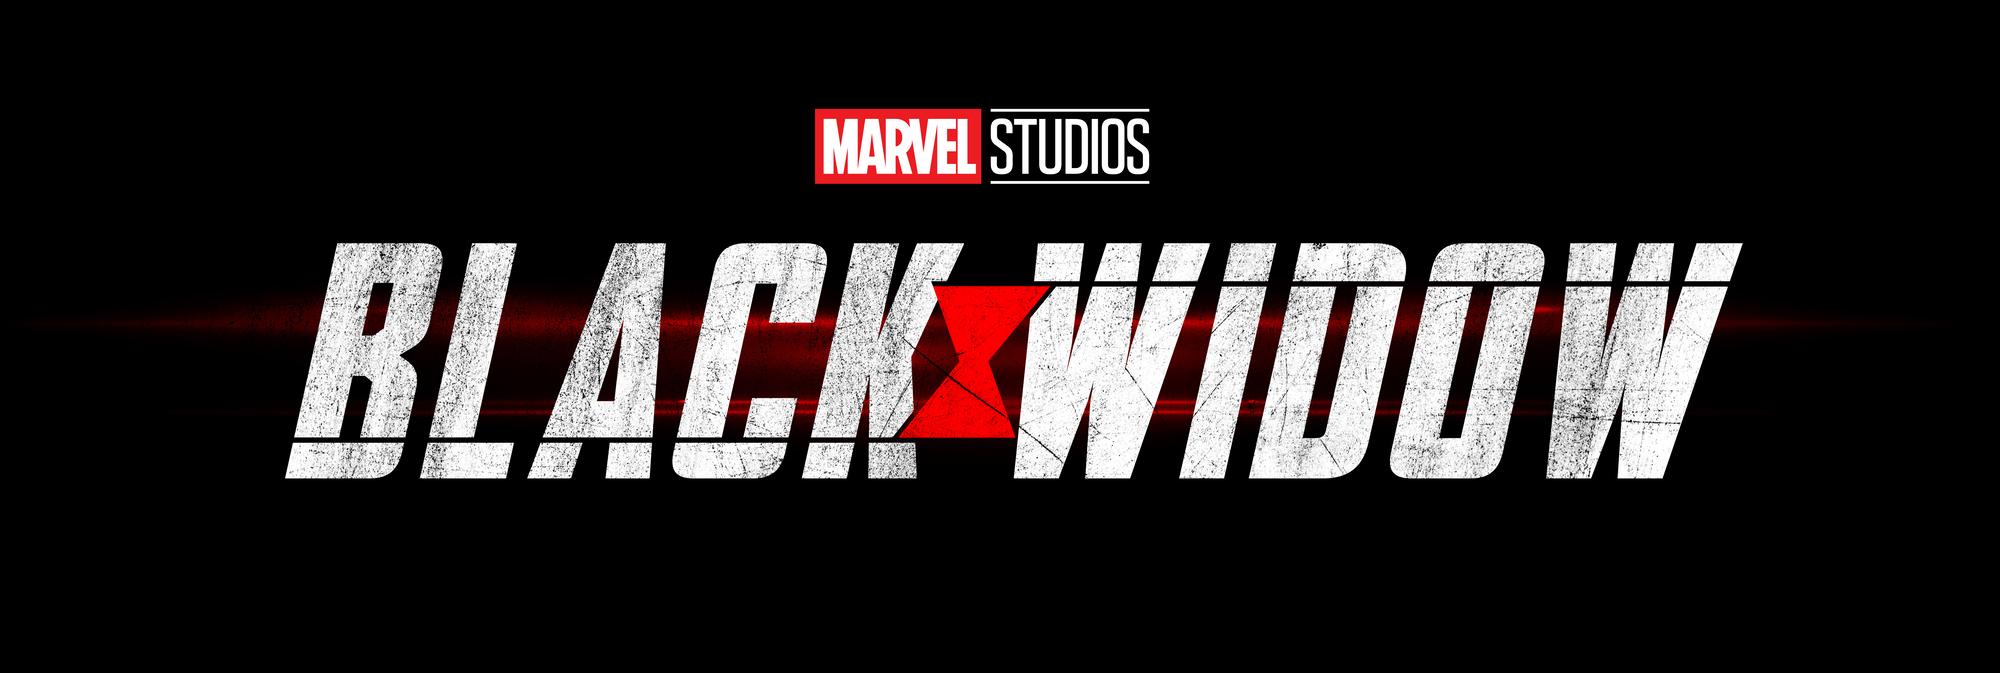 Concept Art For Marvel Studios' BLACK WIDOW Starring SCARLETT